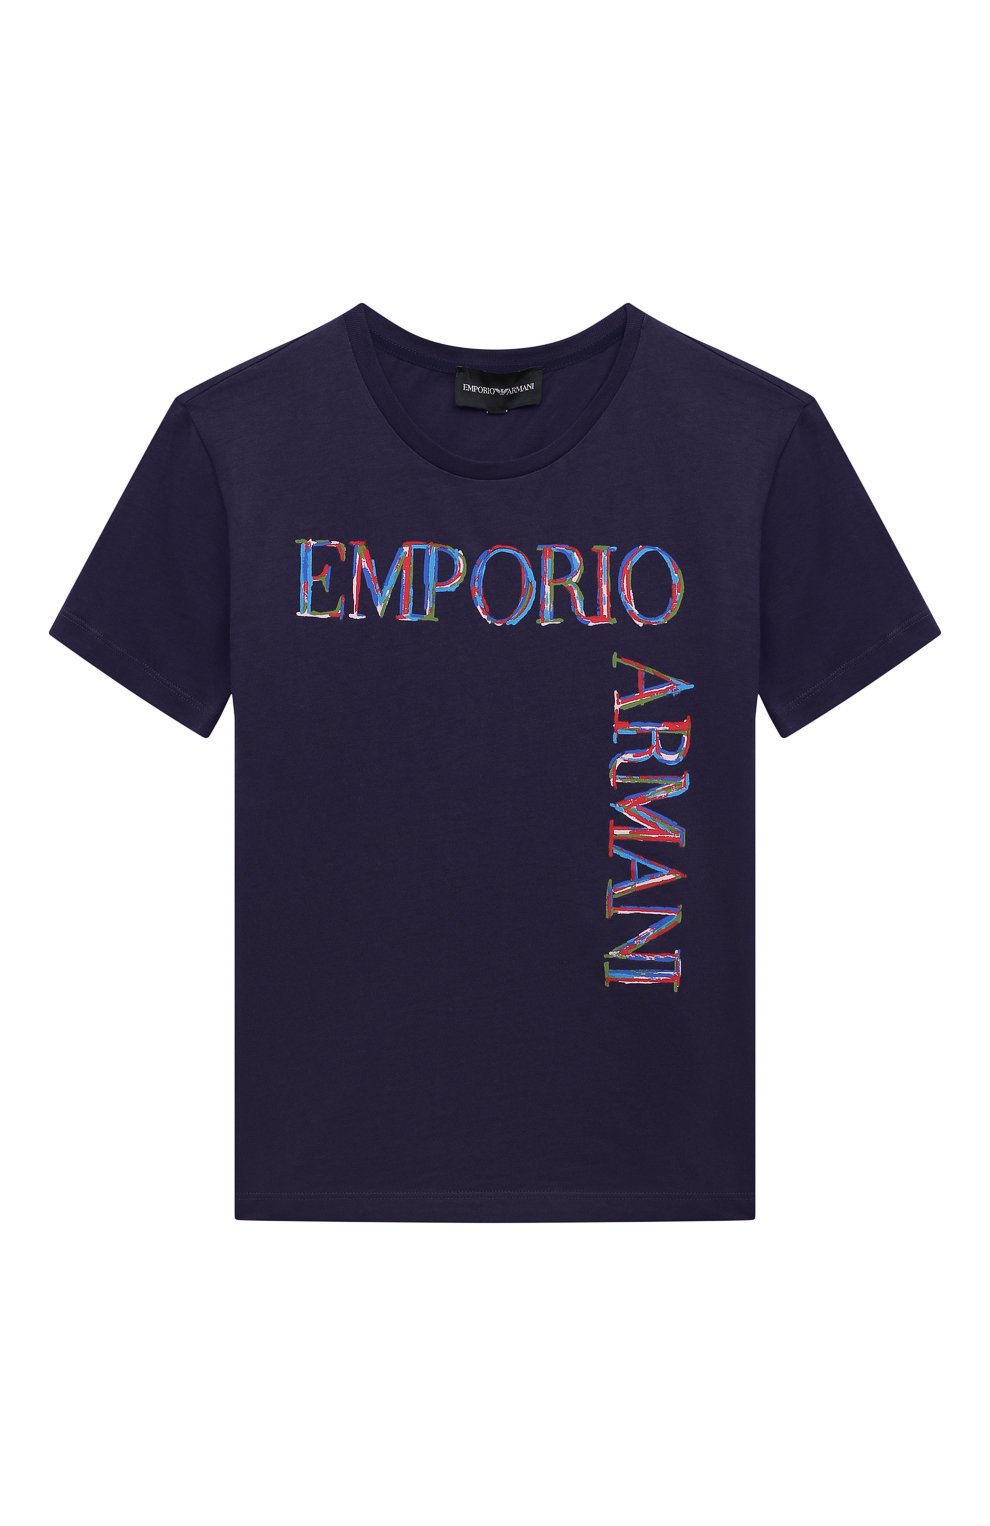 Футболки Emporio Armani, Хлопковая футболка Emporio Armani, Тунис, Фиолетовый, Хлопок: 100%;, 13163872  - купить